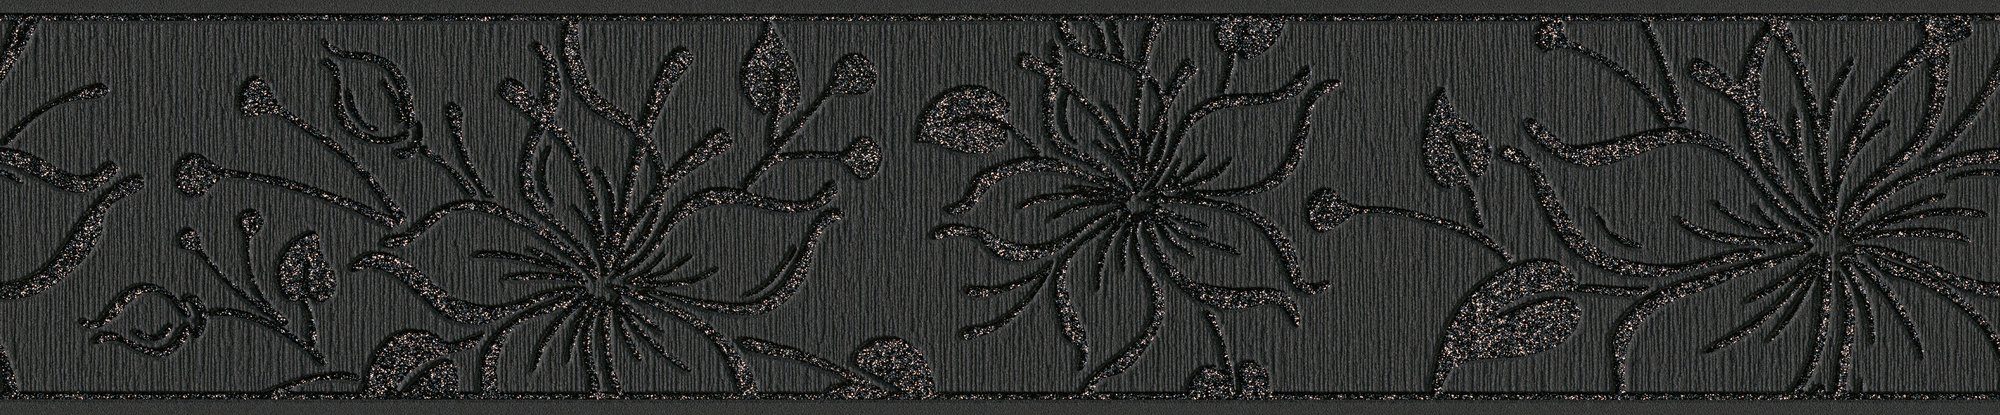 Tapete Bordüre Création Holzoptik Only Borders, aufgeschäumt, A.S. floral, Bordüre schwarz/anthrazit